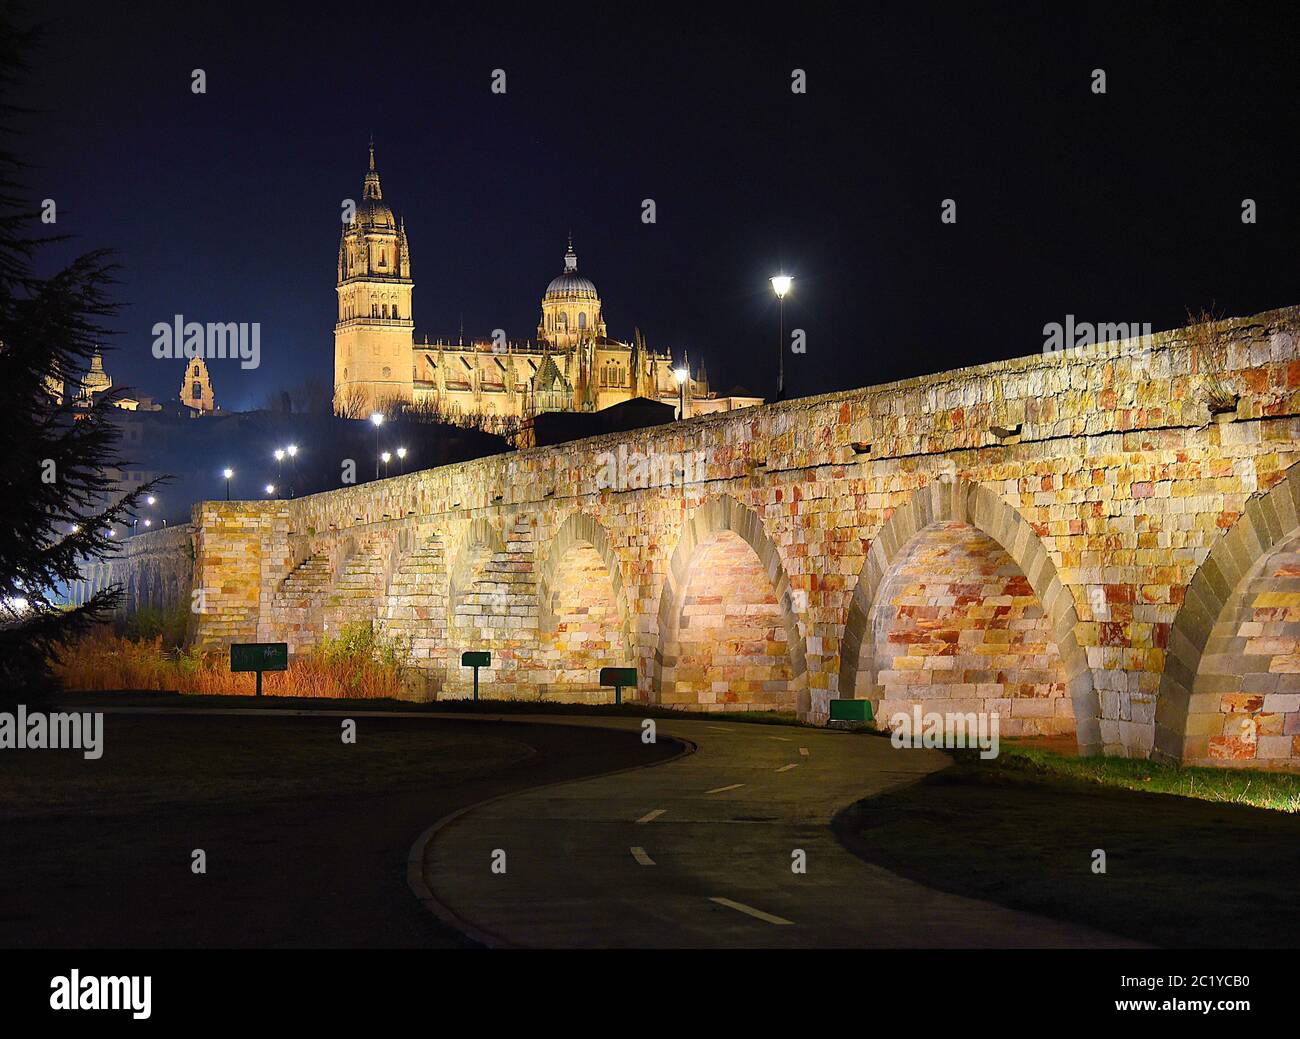 Puente romano y catedrales de noche, Salamanca Foto de stock